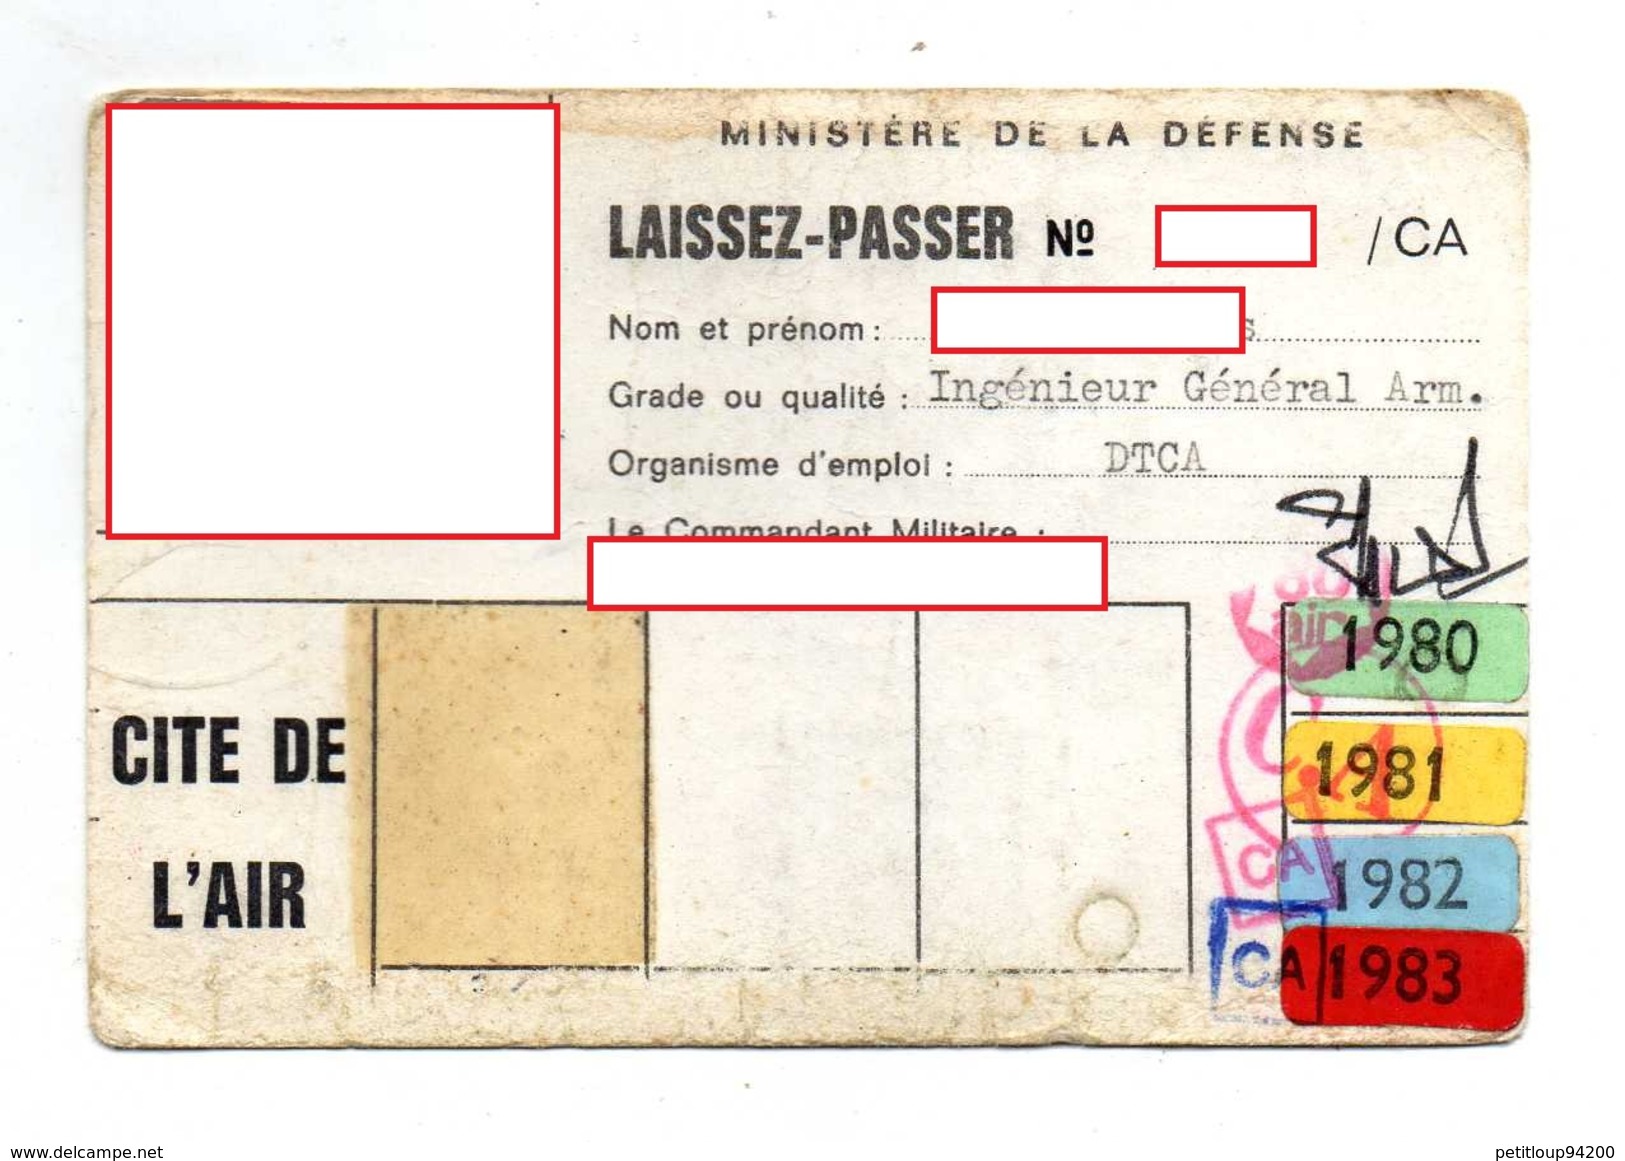 MINISTERE DE LA DEFENSE  CITE DE L'AIR  Laissez Passer - Documents